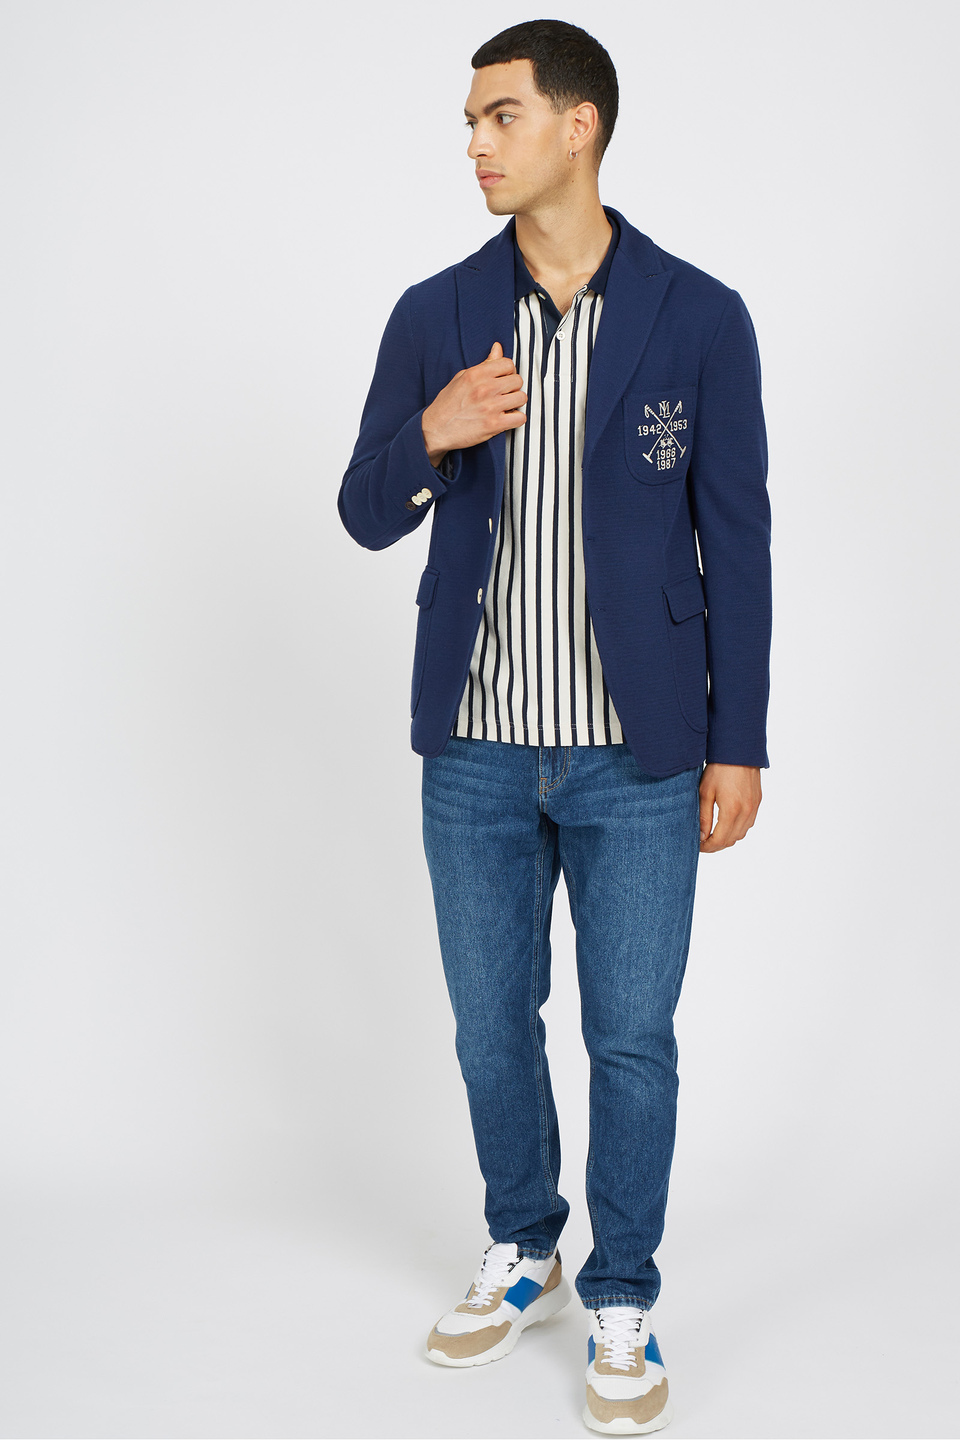 Herren-Kurzarm-Poloshirt aus Stretch-Baumwolle mit normaler Passform - Vernen | La Martina - Official Online Shop